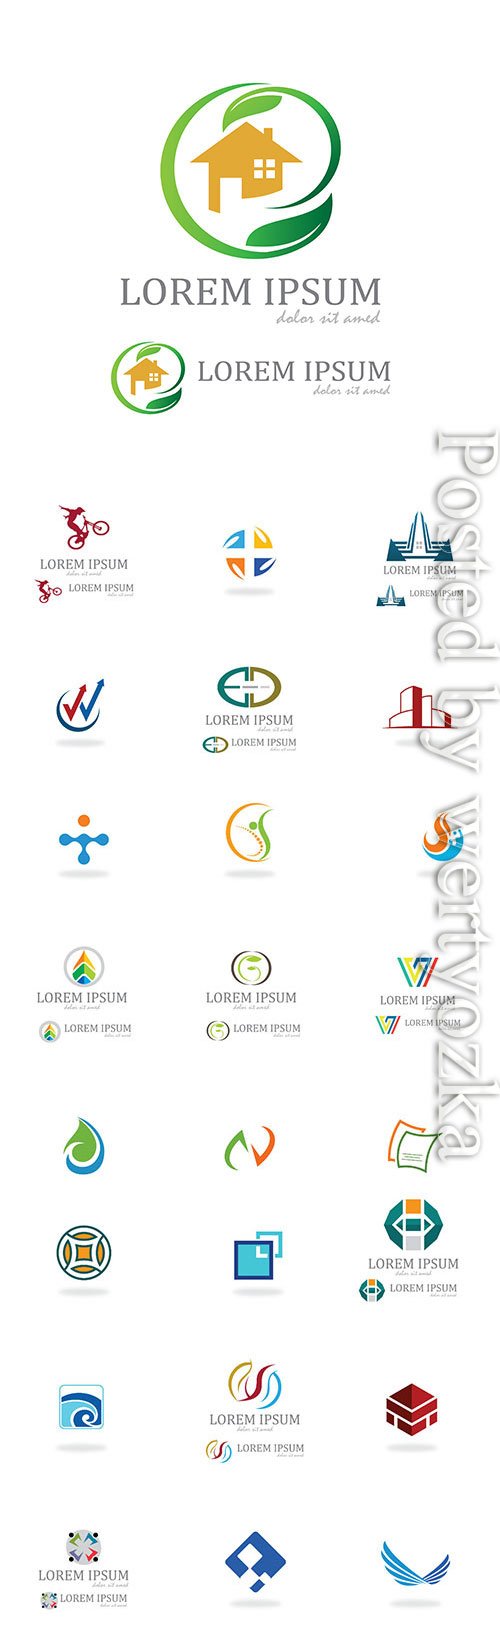 Assorted logos in vector